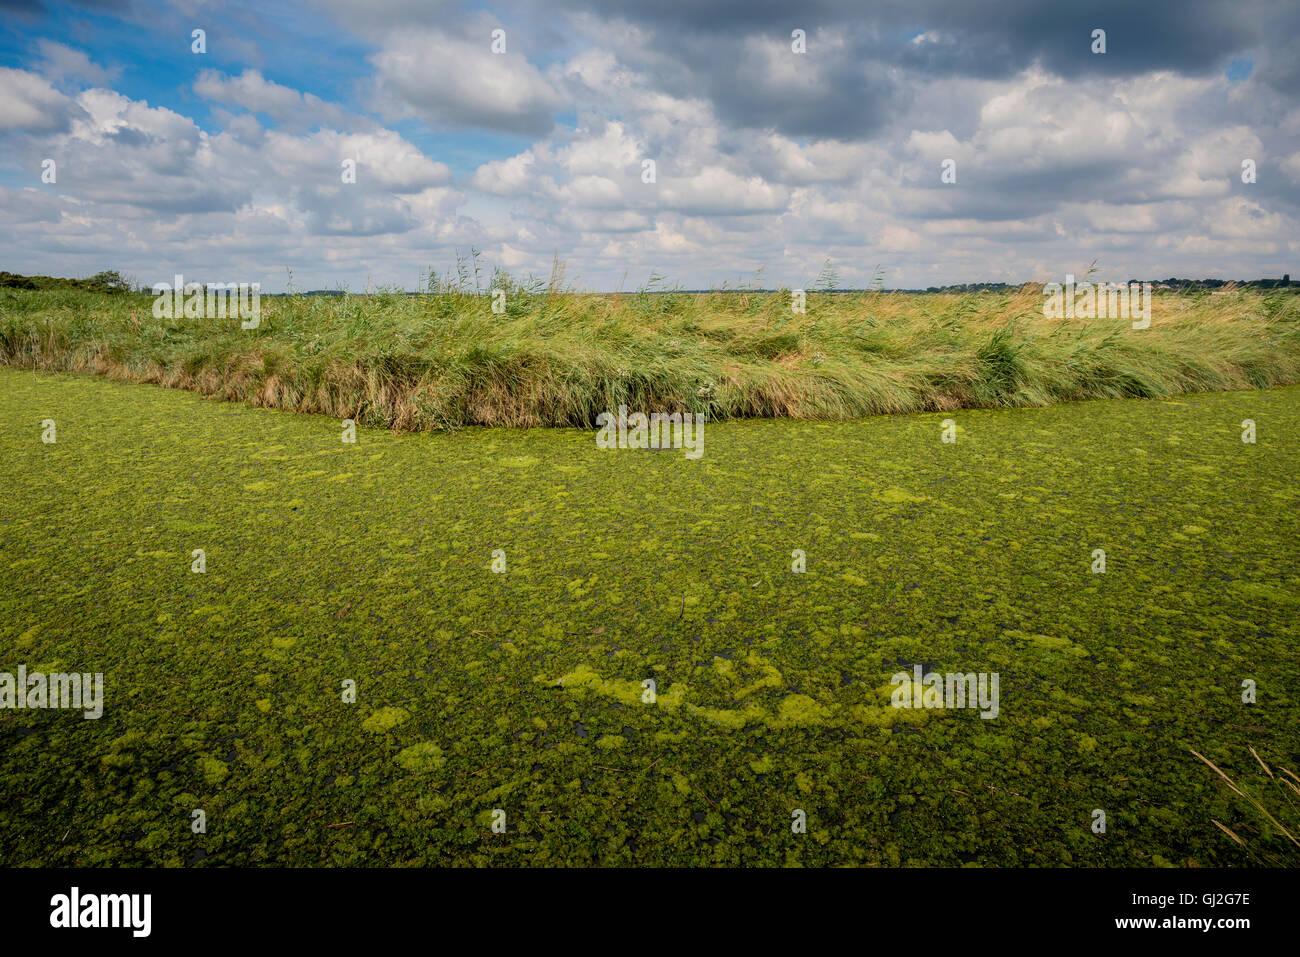 El alga verde que cubre una hidrovía Suffolk, hambrienta de oxígeno Foto de stock